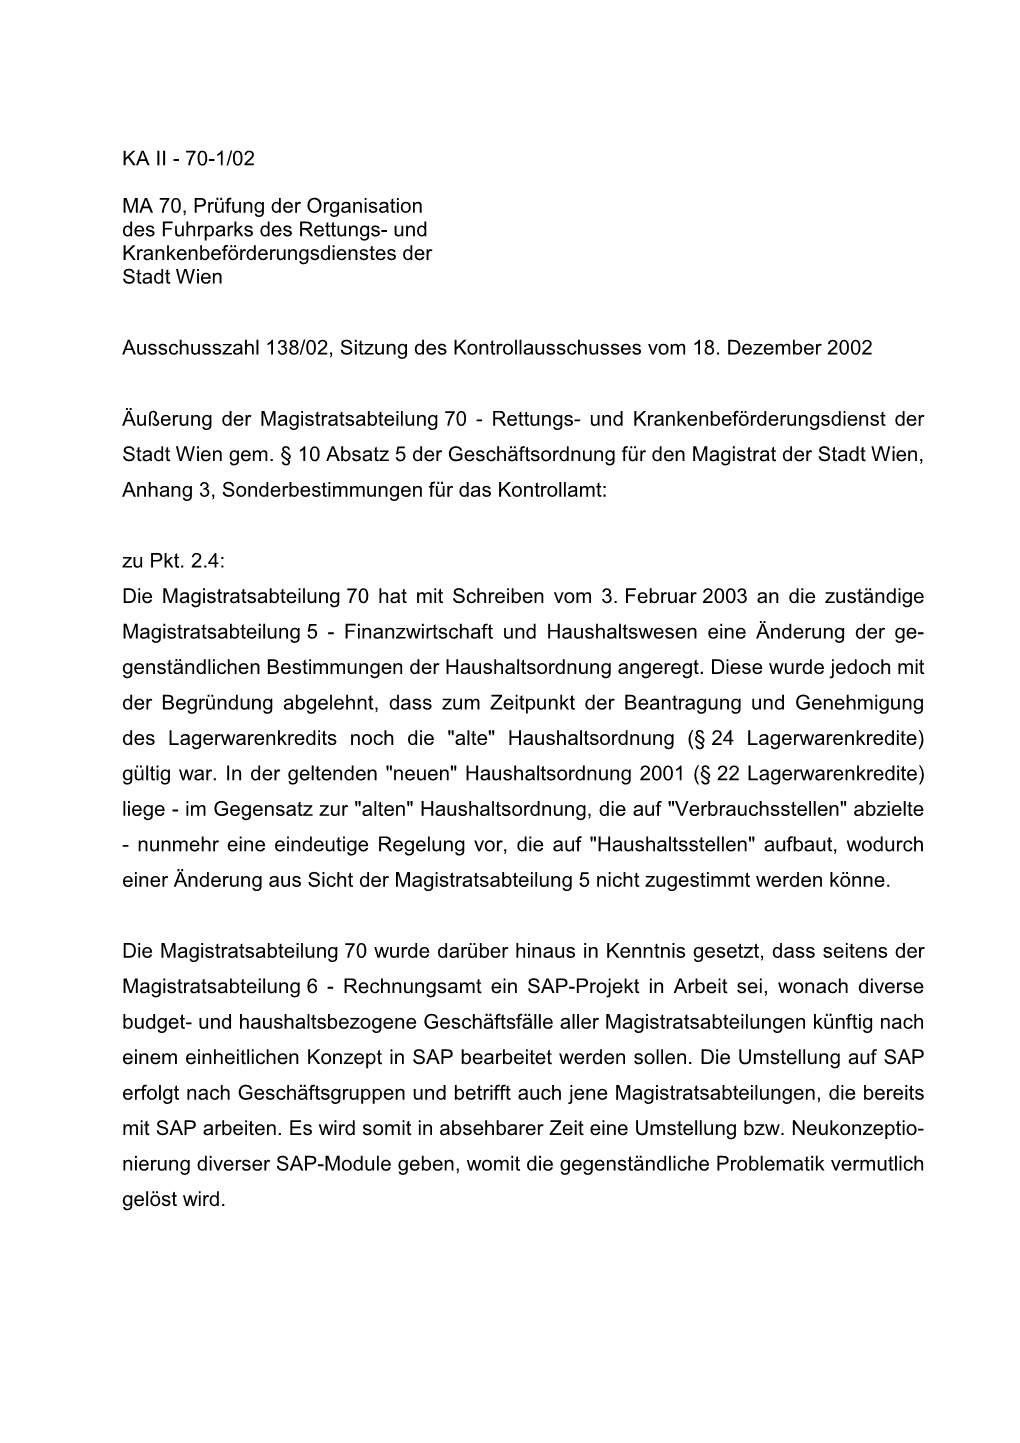 MA 70, Prüfung Der Organisation Des Fuhrparks Des Rettungs- Und Krankenbeförderungsdienstes Der Stadt Wien